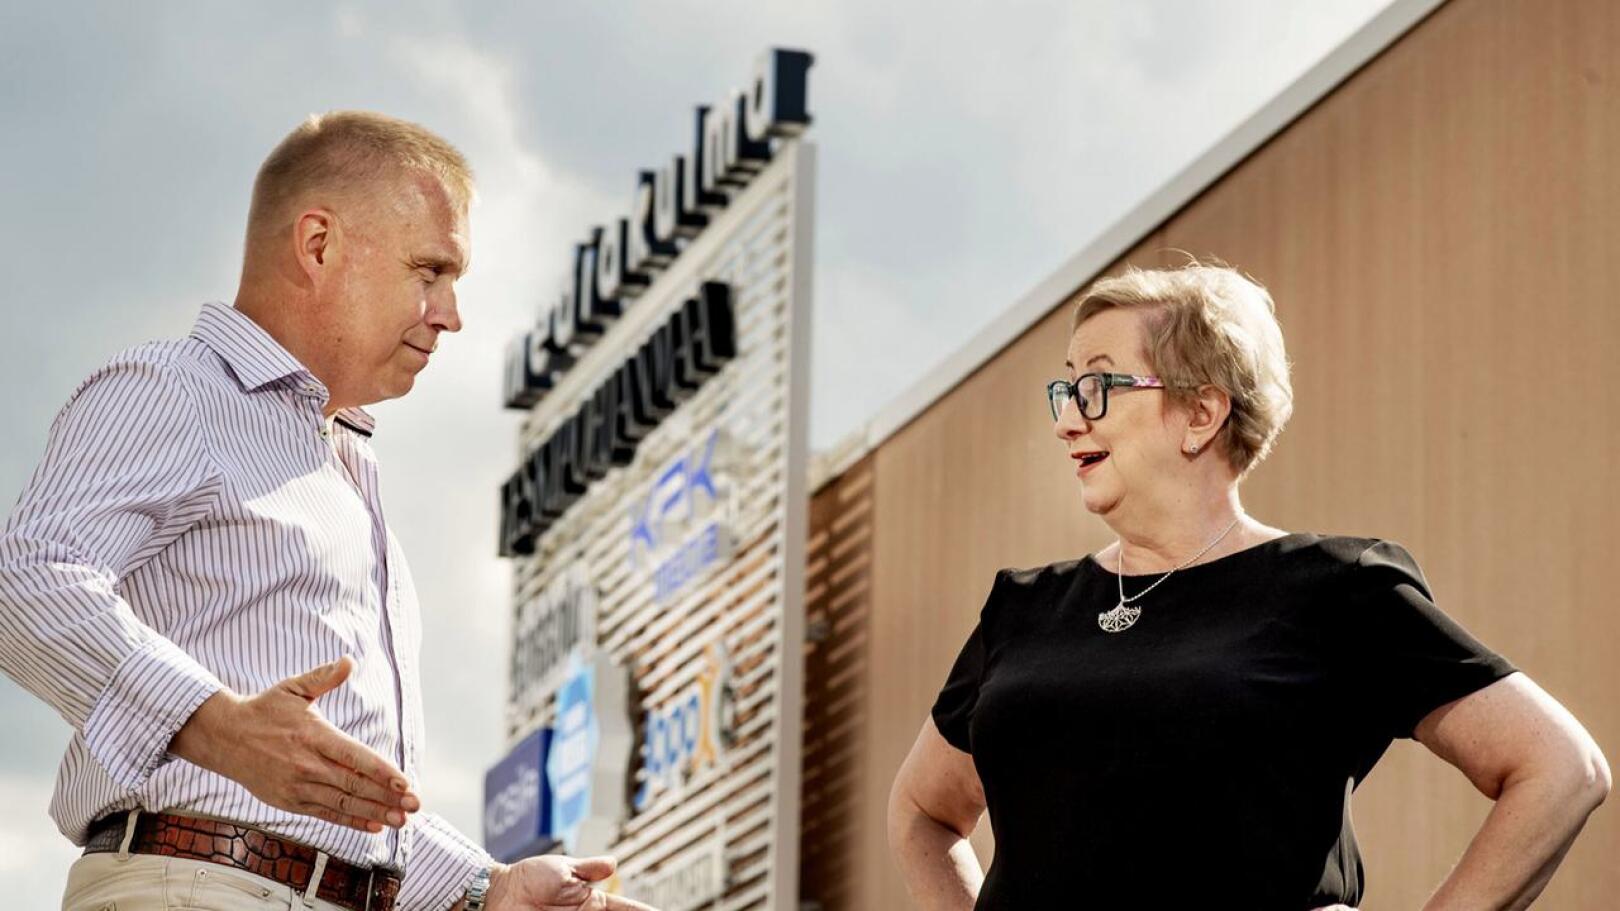 Keskipohjanmaan toimittaja Kristian Sundqvist ja päätoimittaja Tiina Ojutkangas luotsaavat suoraa vaalilähetystä 13.6. klo 19.30 alkaen.